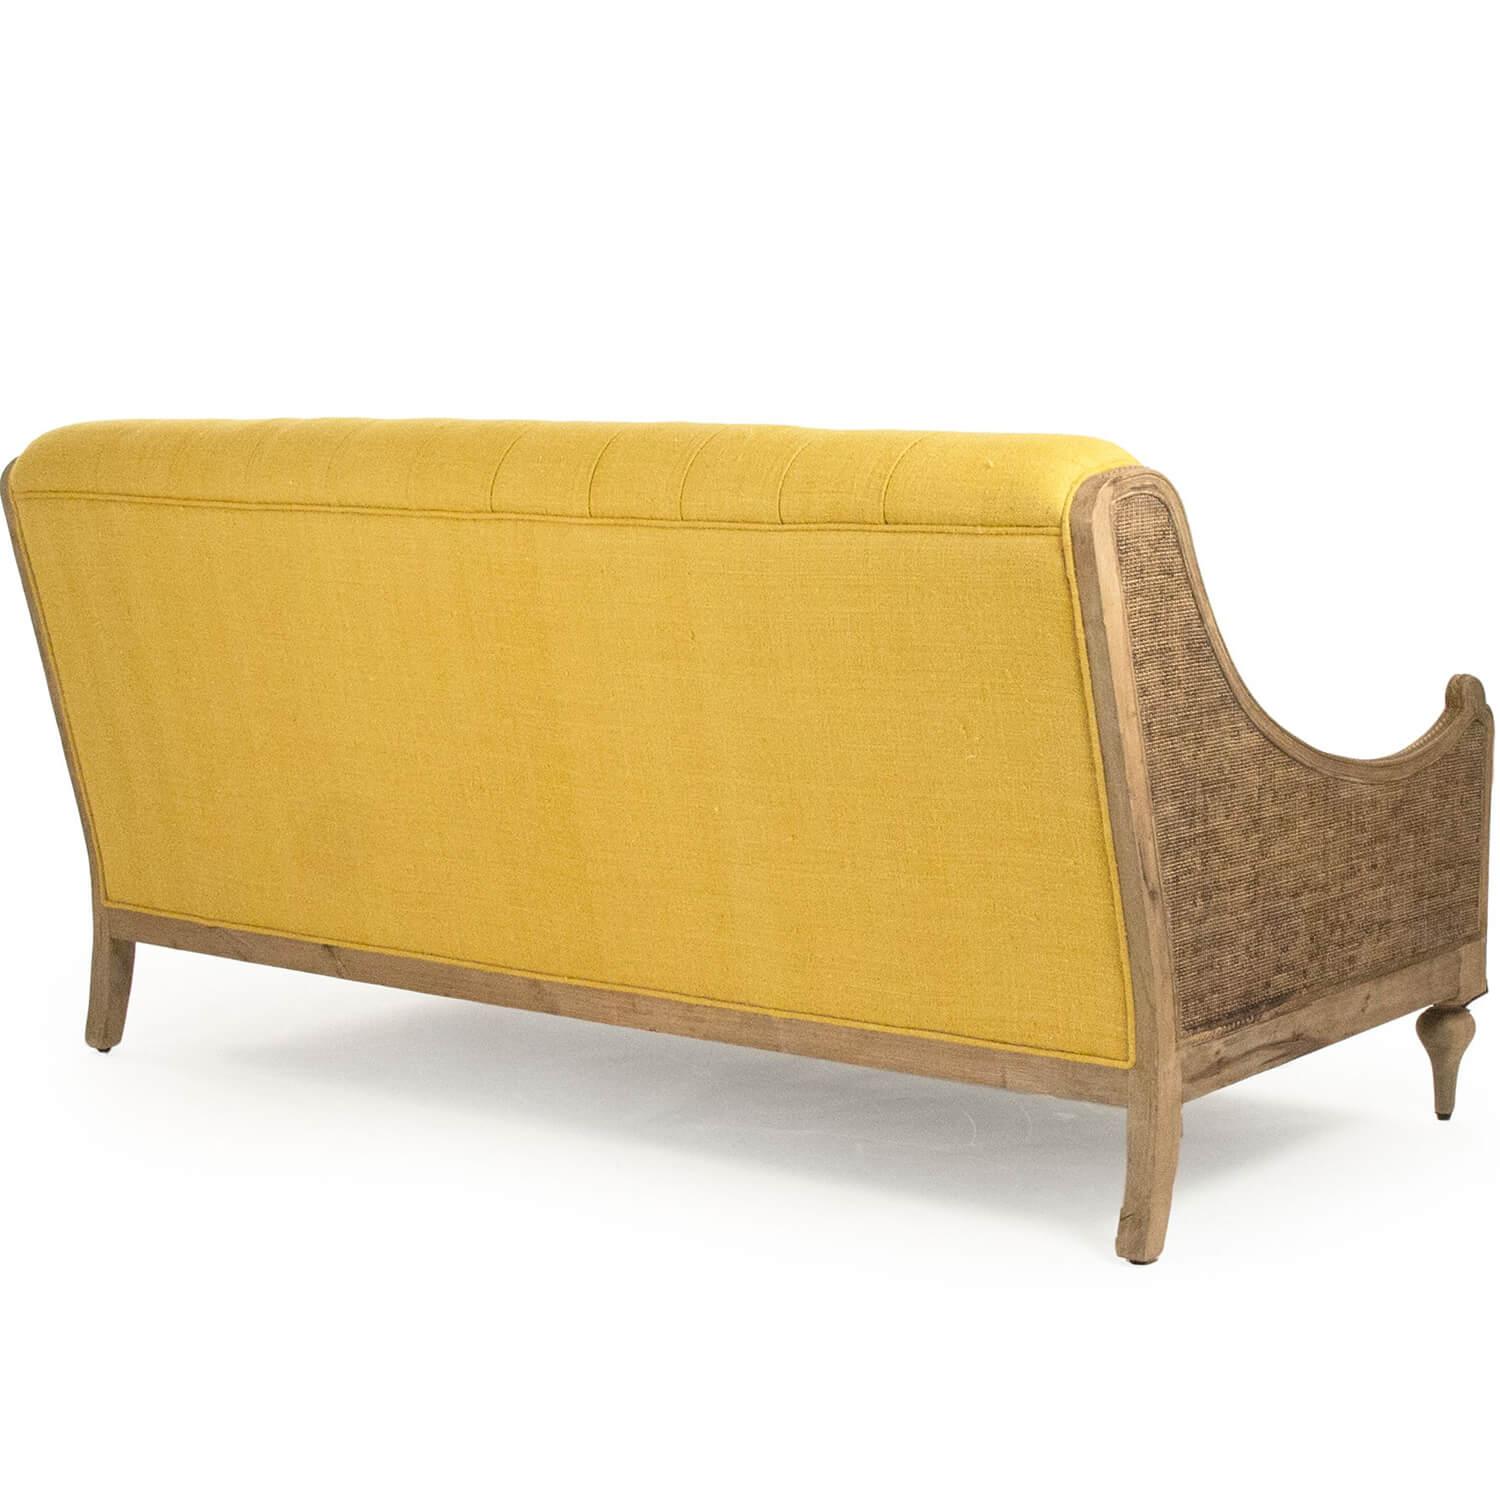 Tufted Provence Yellow Salon Sofa - Belle Escape